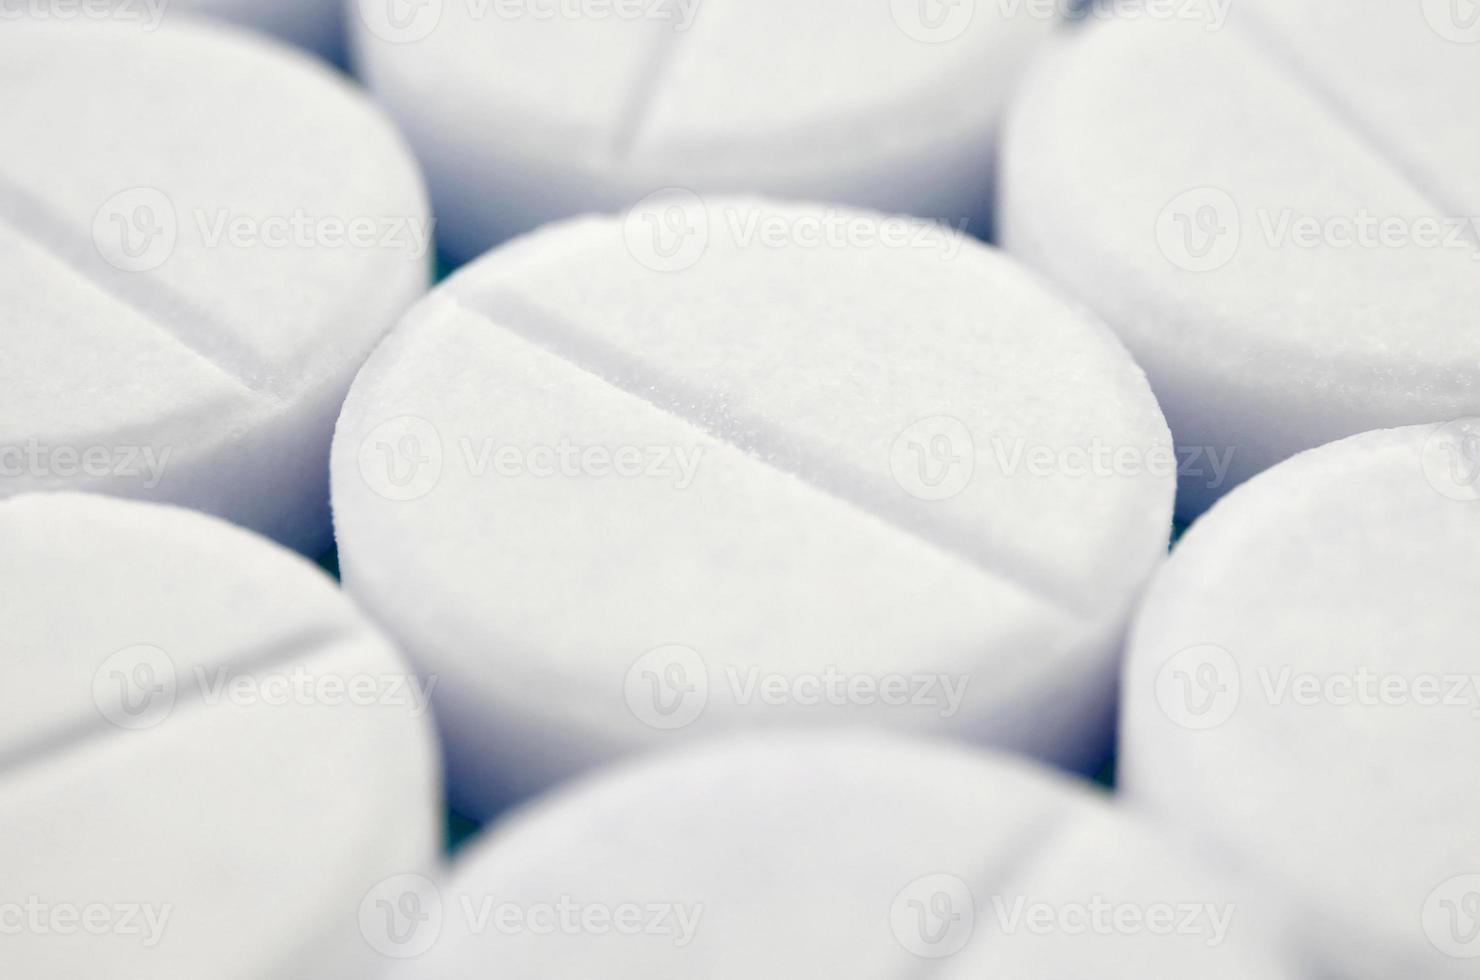 imagem de close-up de pílulas brancas. macro com profundidade de campo extremamente rasa foto